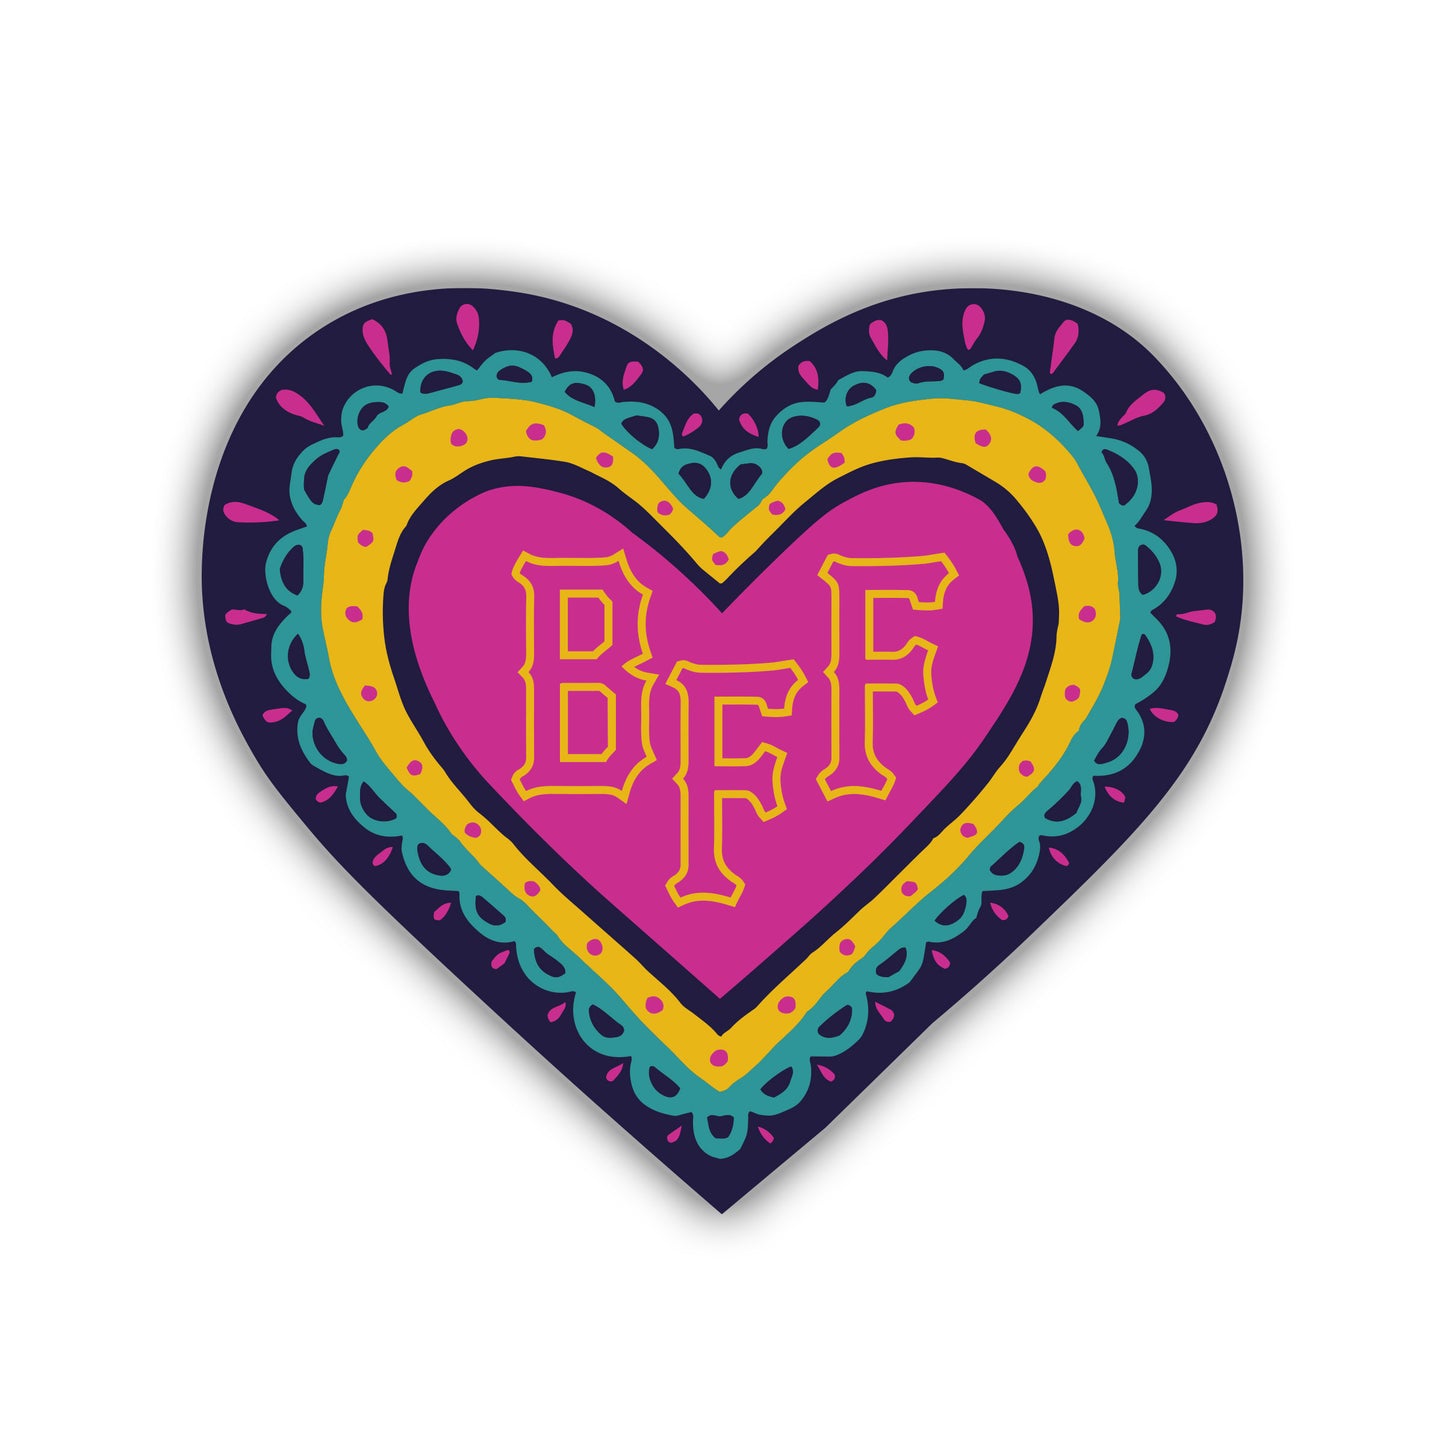 BFF Corazón (Heart) Vinyl Sticker